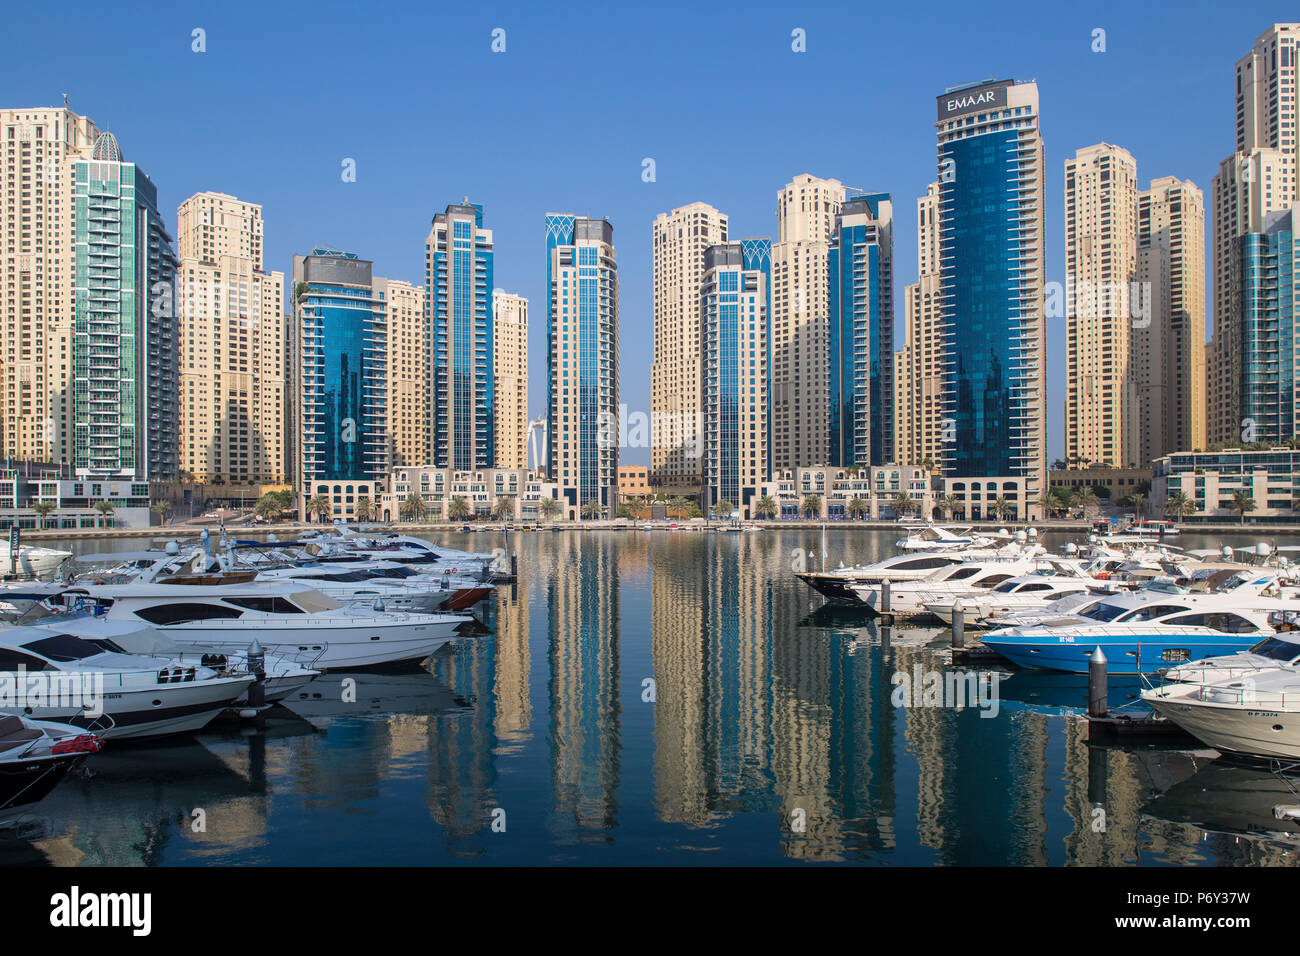 United Arab Emirates, Dubai, Dubai marina Stock Photo